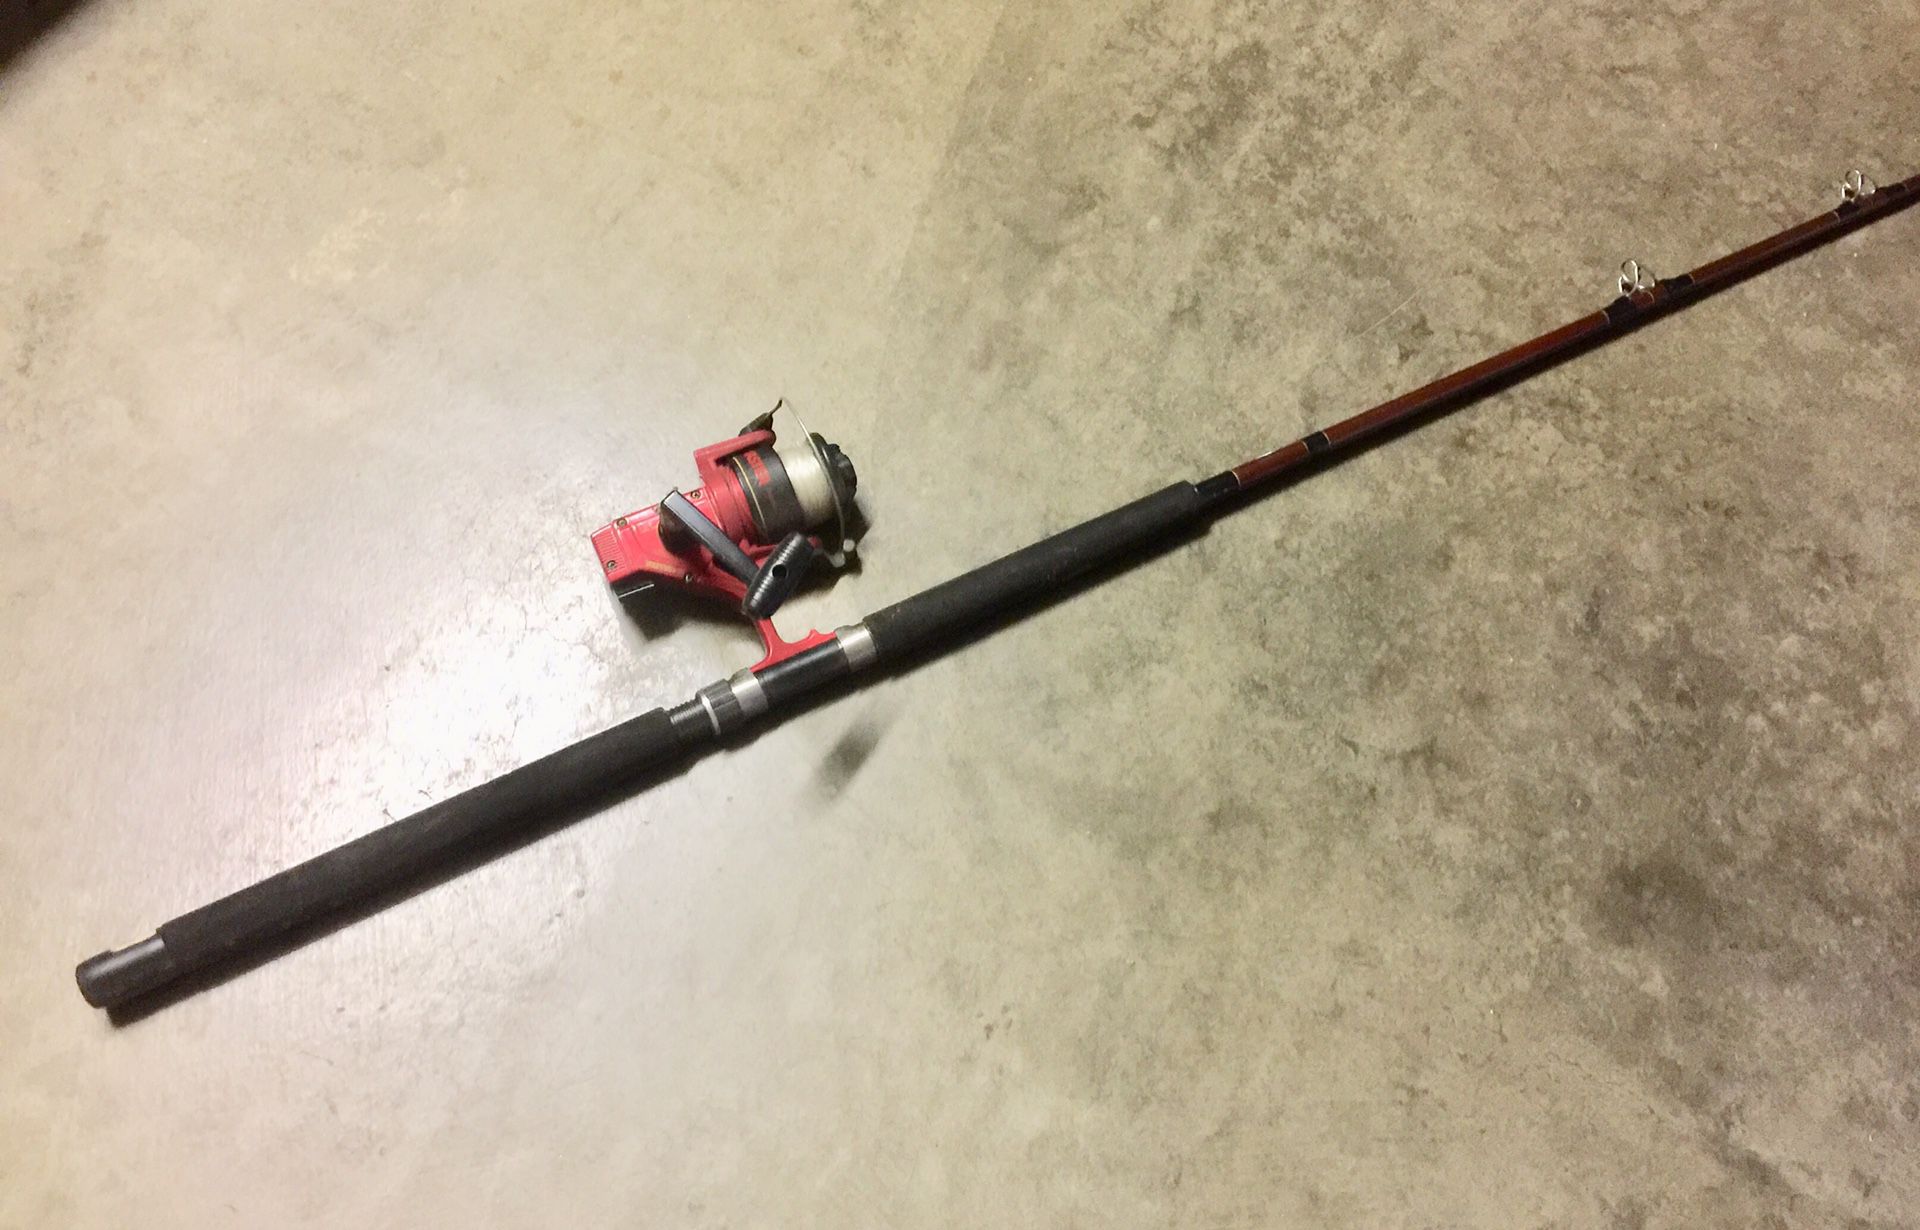 Master fishing rod. $20